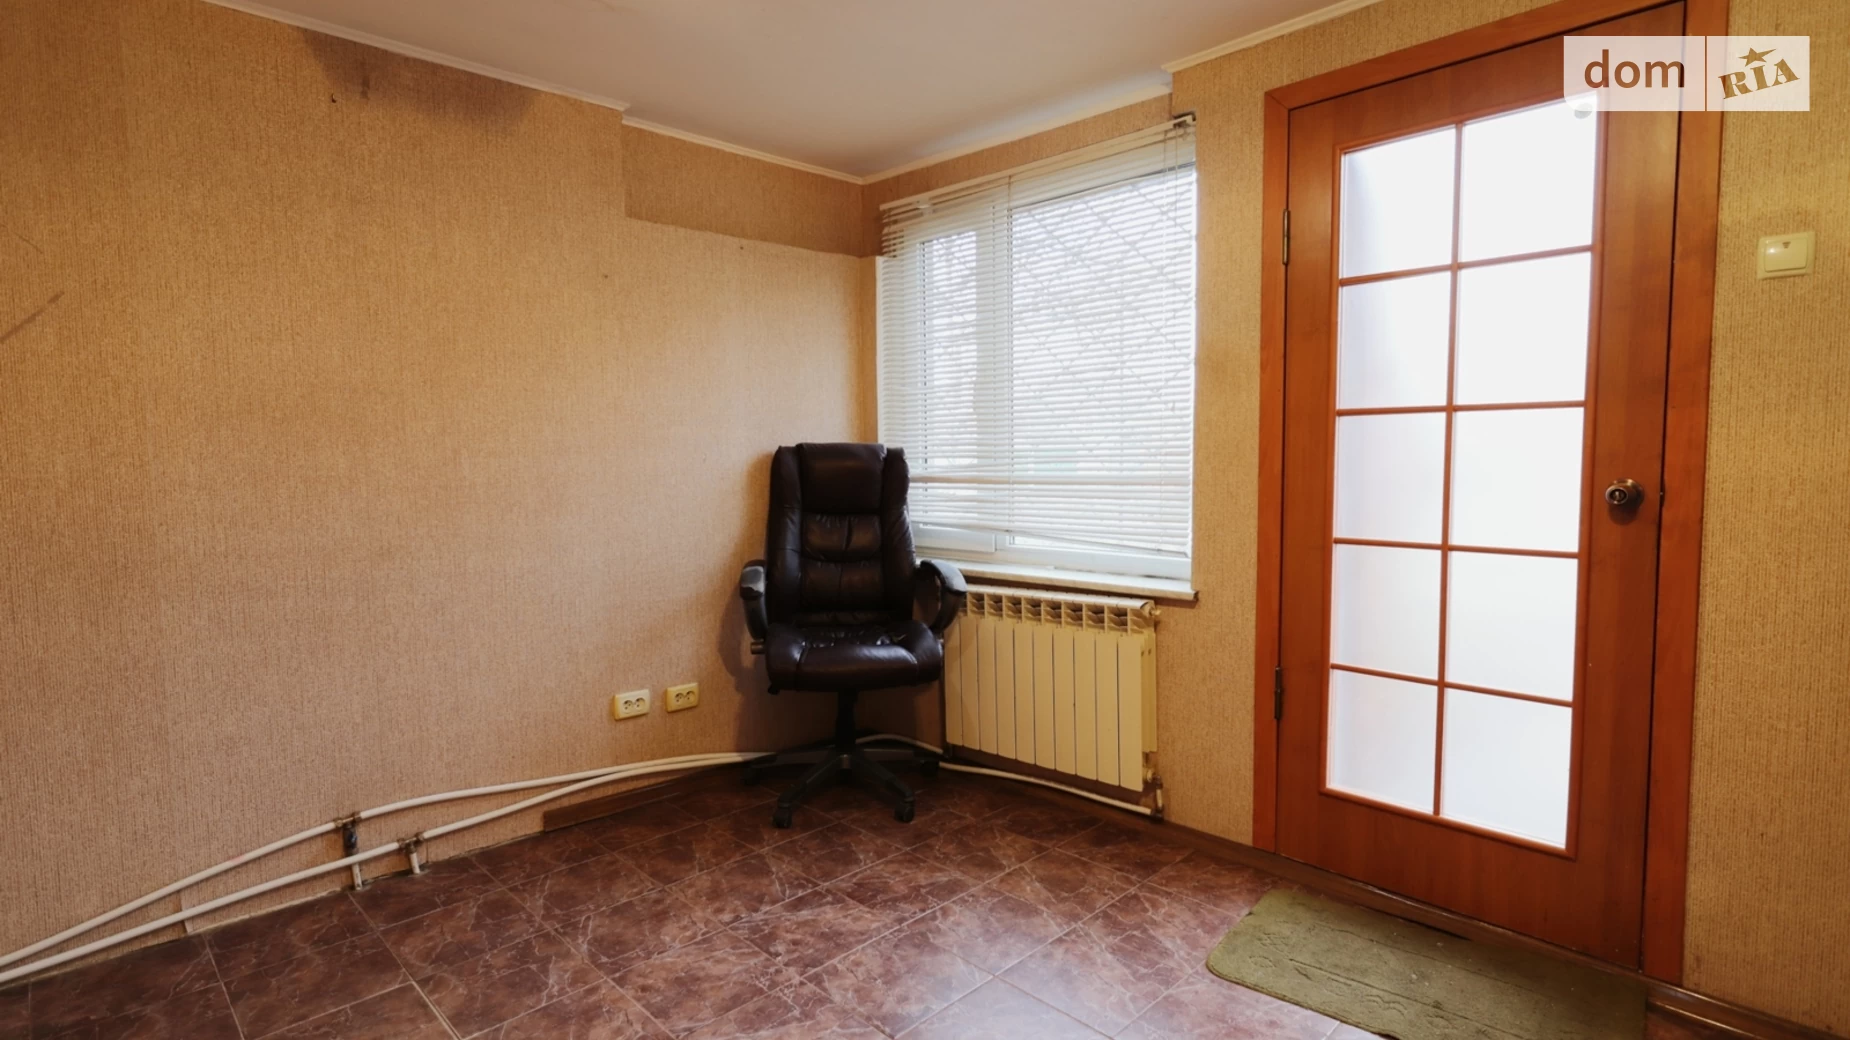 Продається 2-кімнатна квартира 64.5 кв. м у Миколаєві